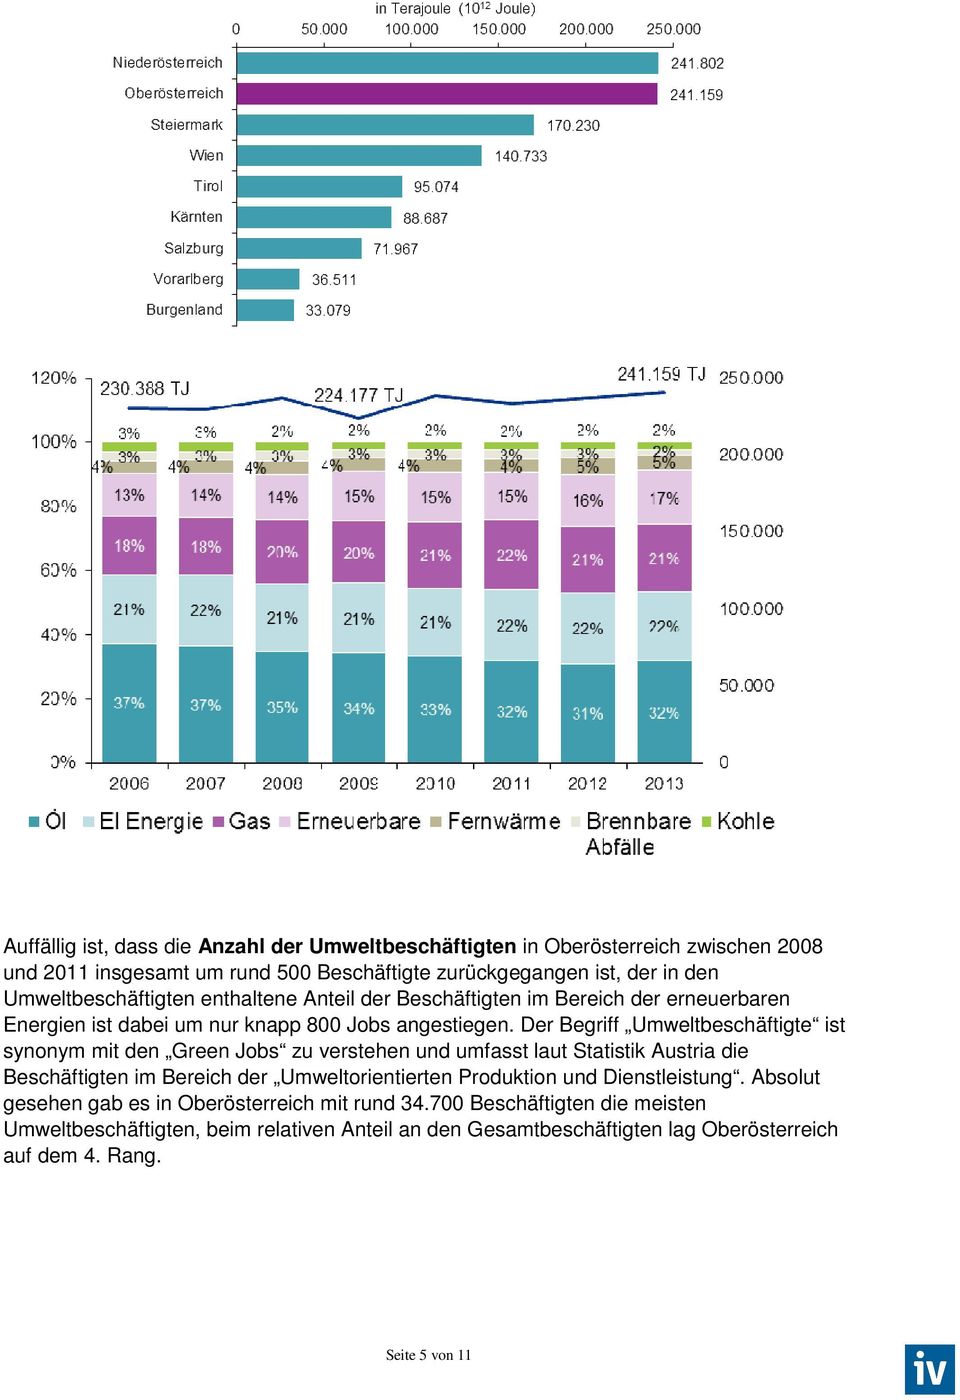 Der Begriff Umweltbeschäftigte ist synonym mit den Green Jobs zu verstehen und umfasst laut Statistik Austria die Beschäftigten im Bereich der Umweltorientierten Produktion